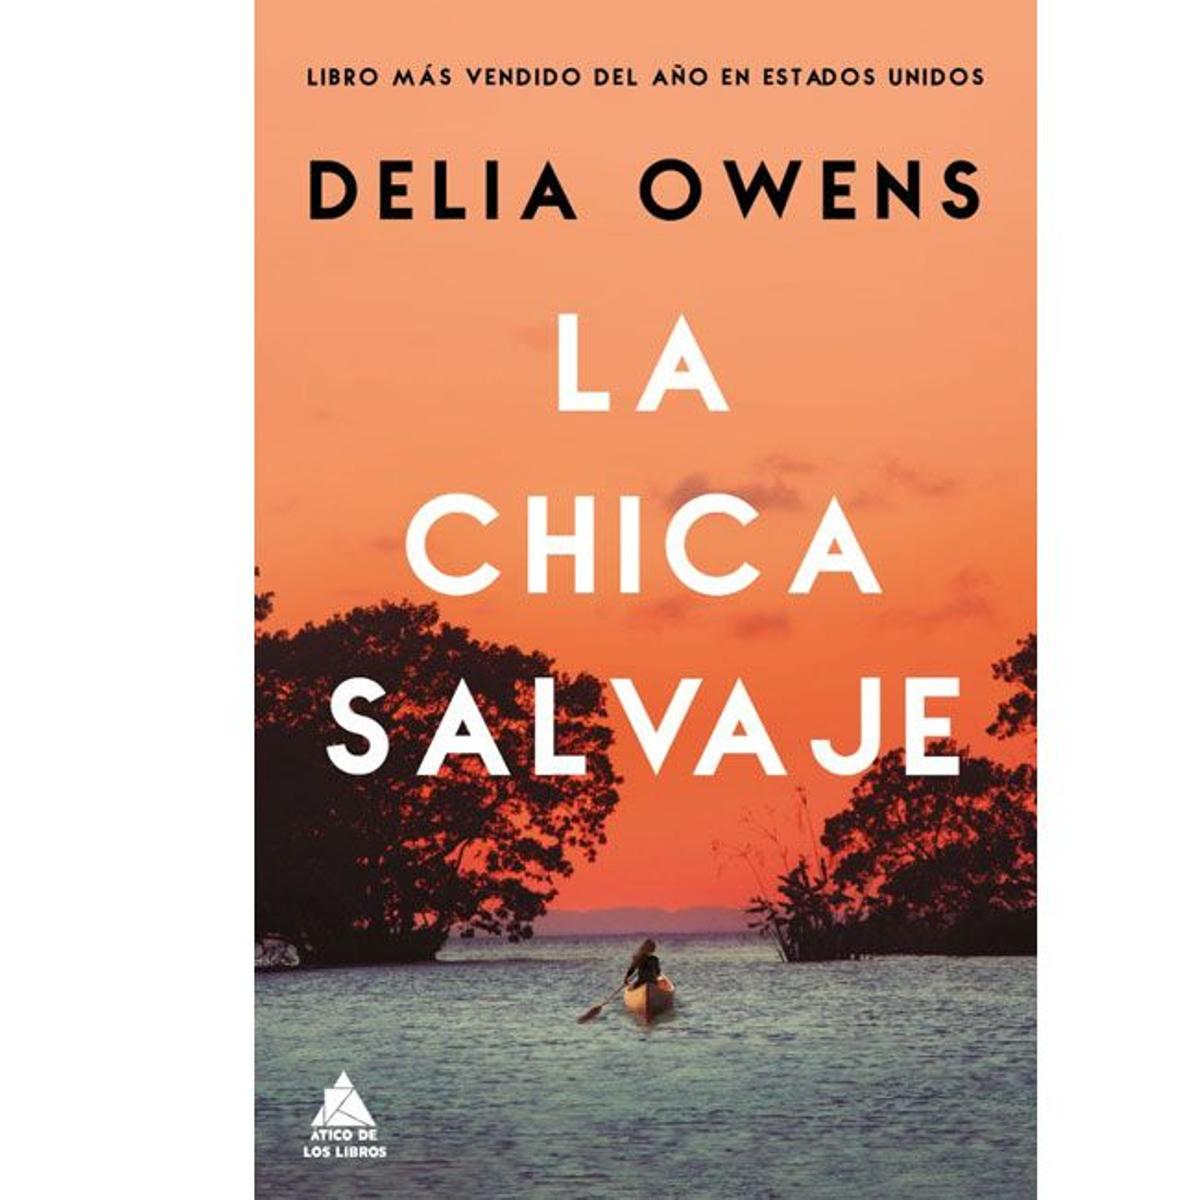 'La chica salvaje', de Delia Owens